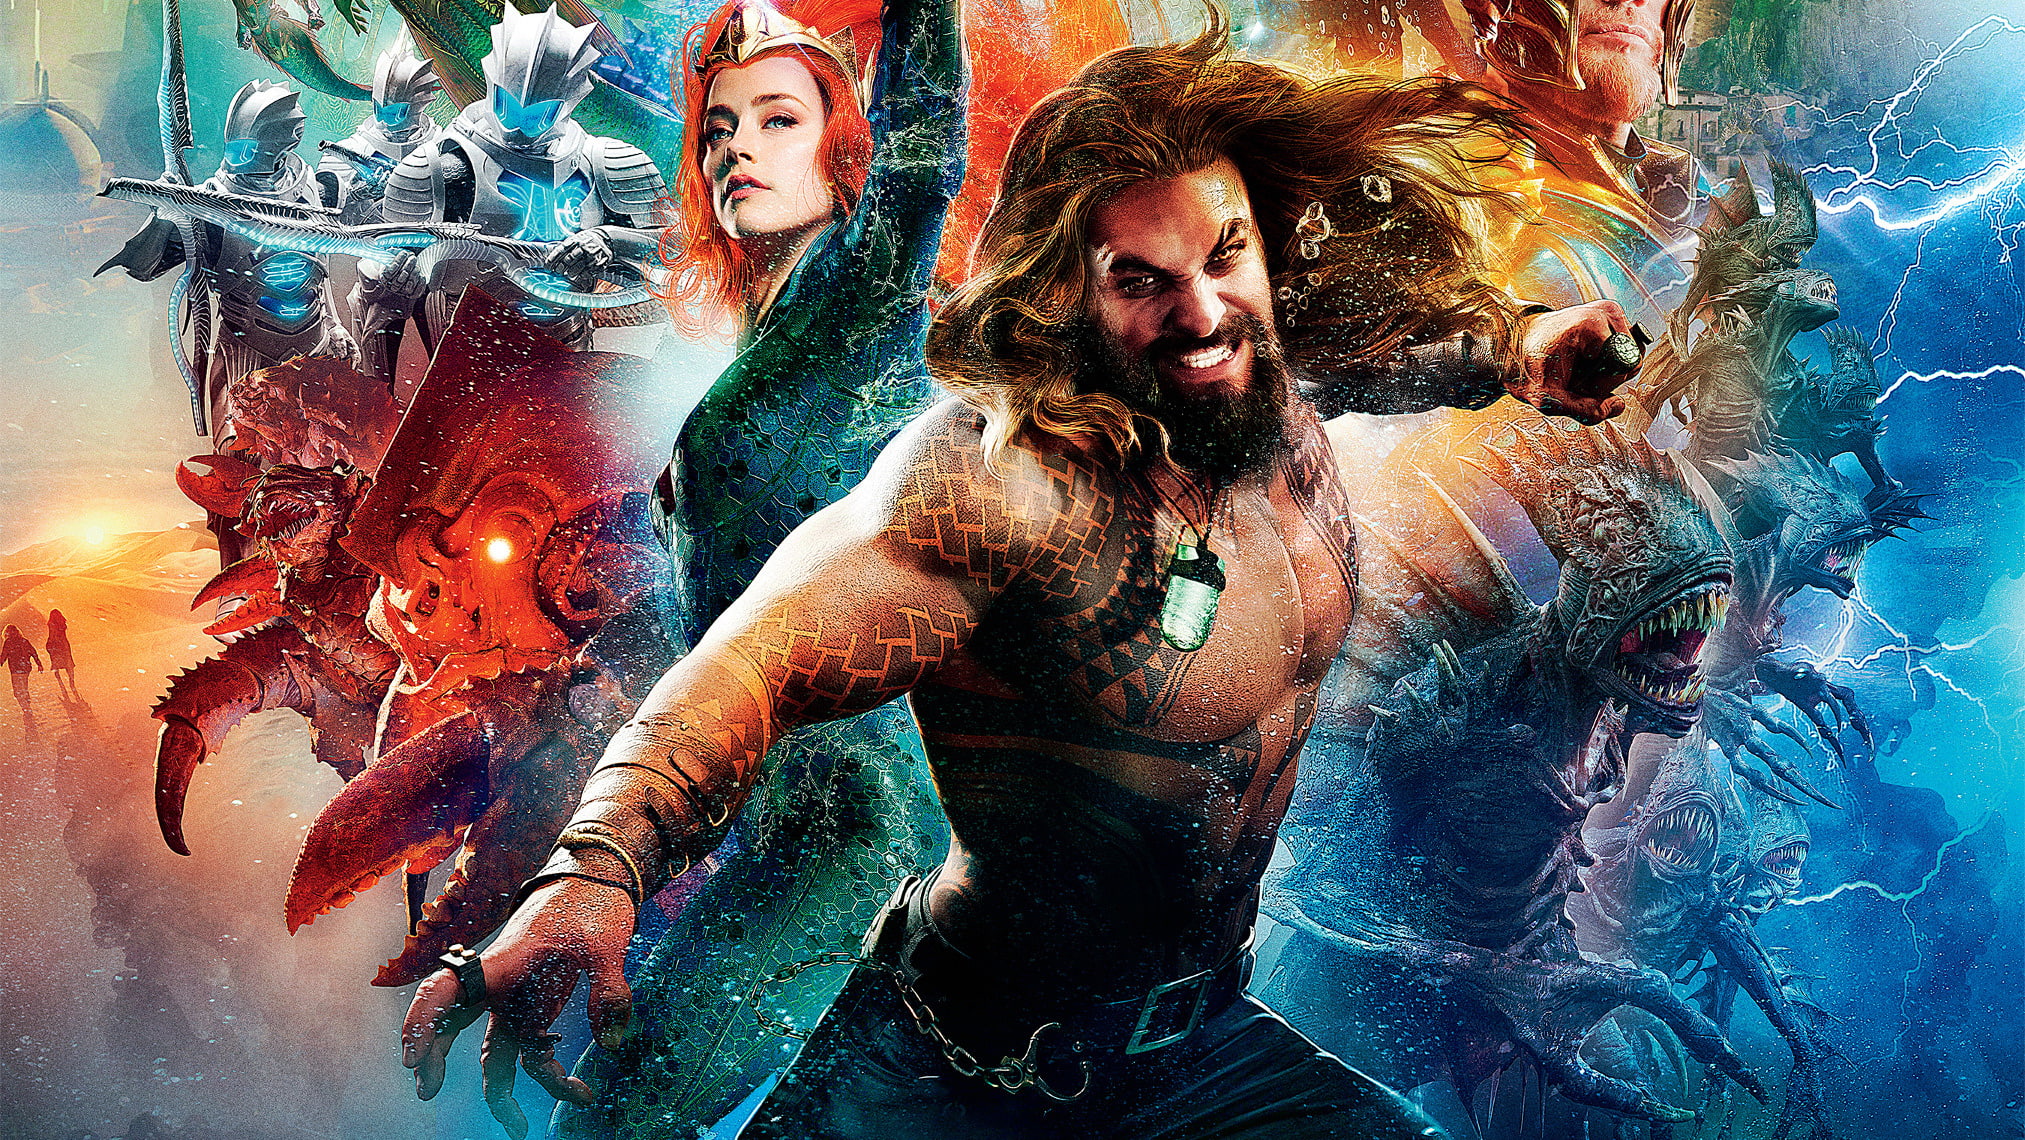 HD wallpaper: Movie, Aquaman, Amber Heard, Mera DC Comics